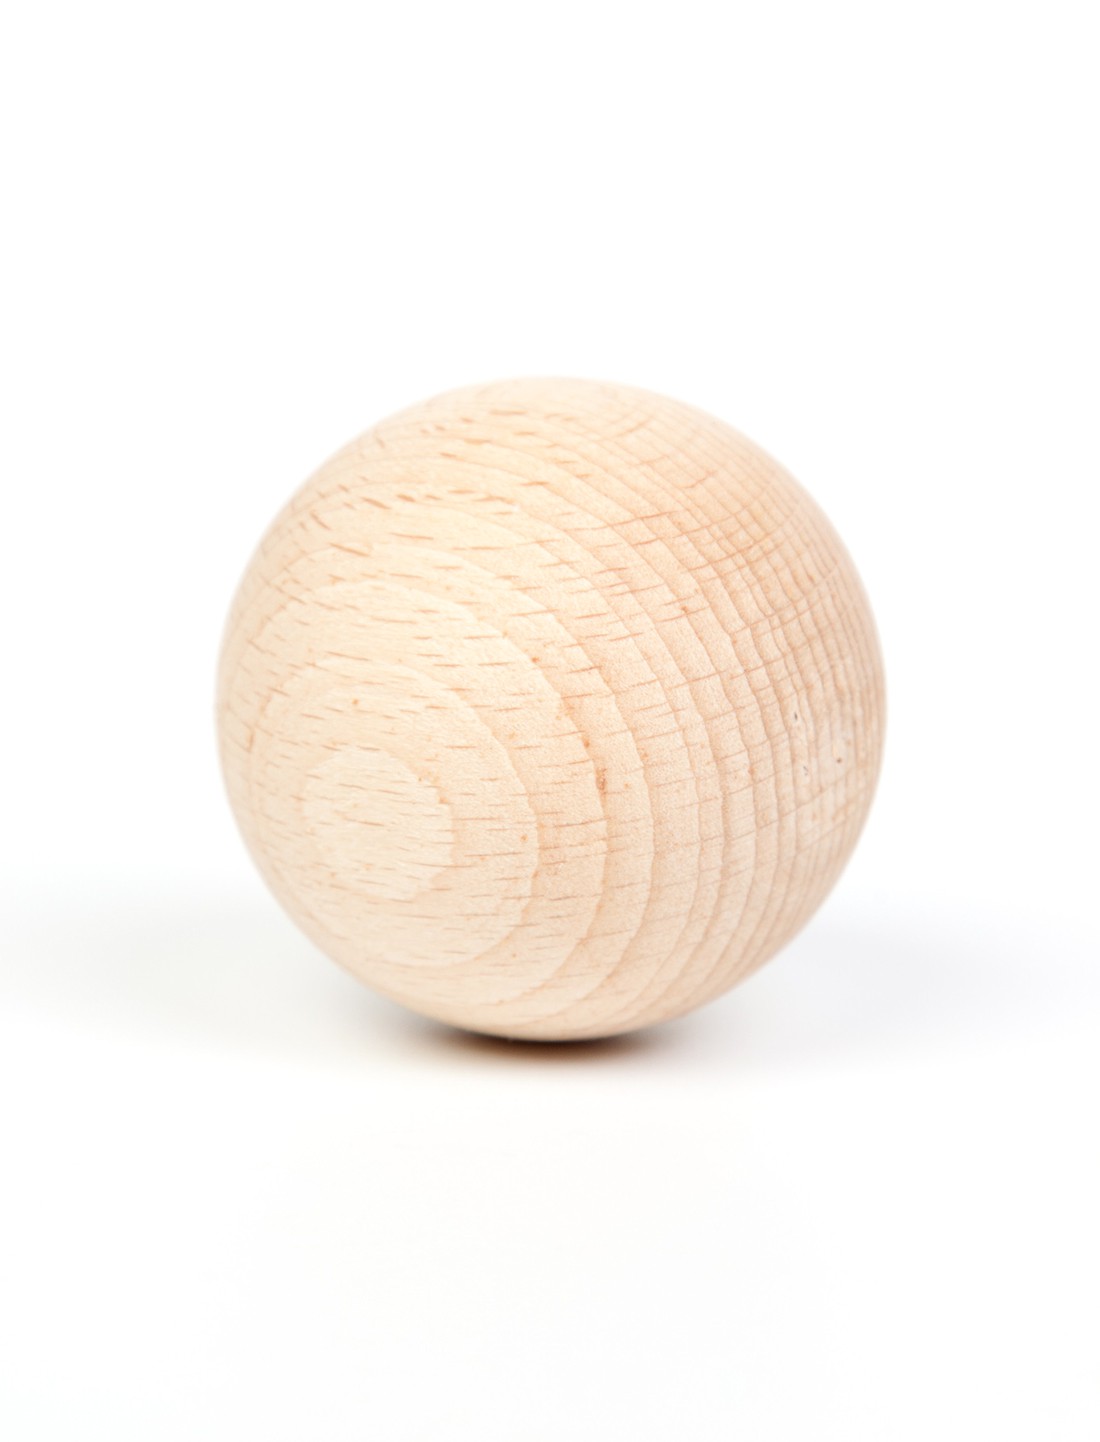 Bola madera natural. Grapat